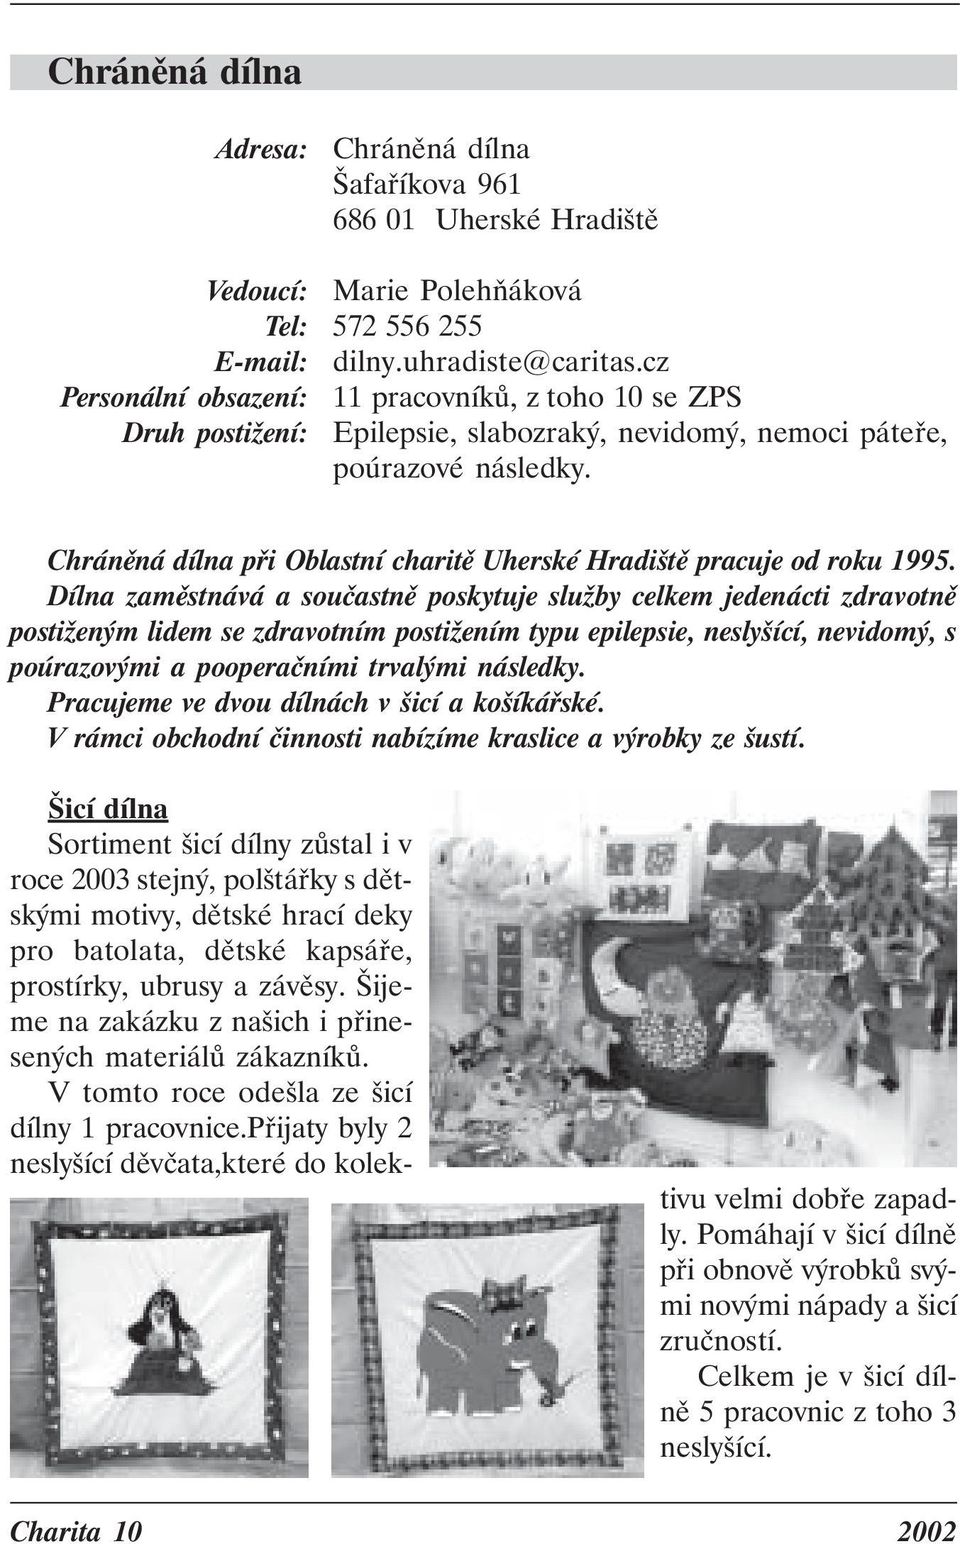 Oblastní charita Velehradská tř Uh. Hradiště. Tel: - PDF Free Download